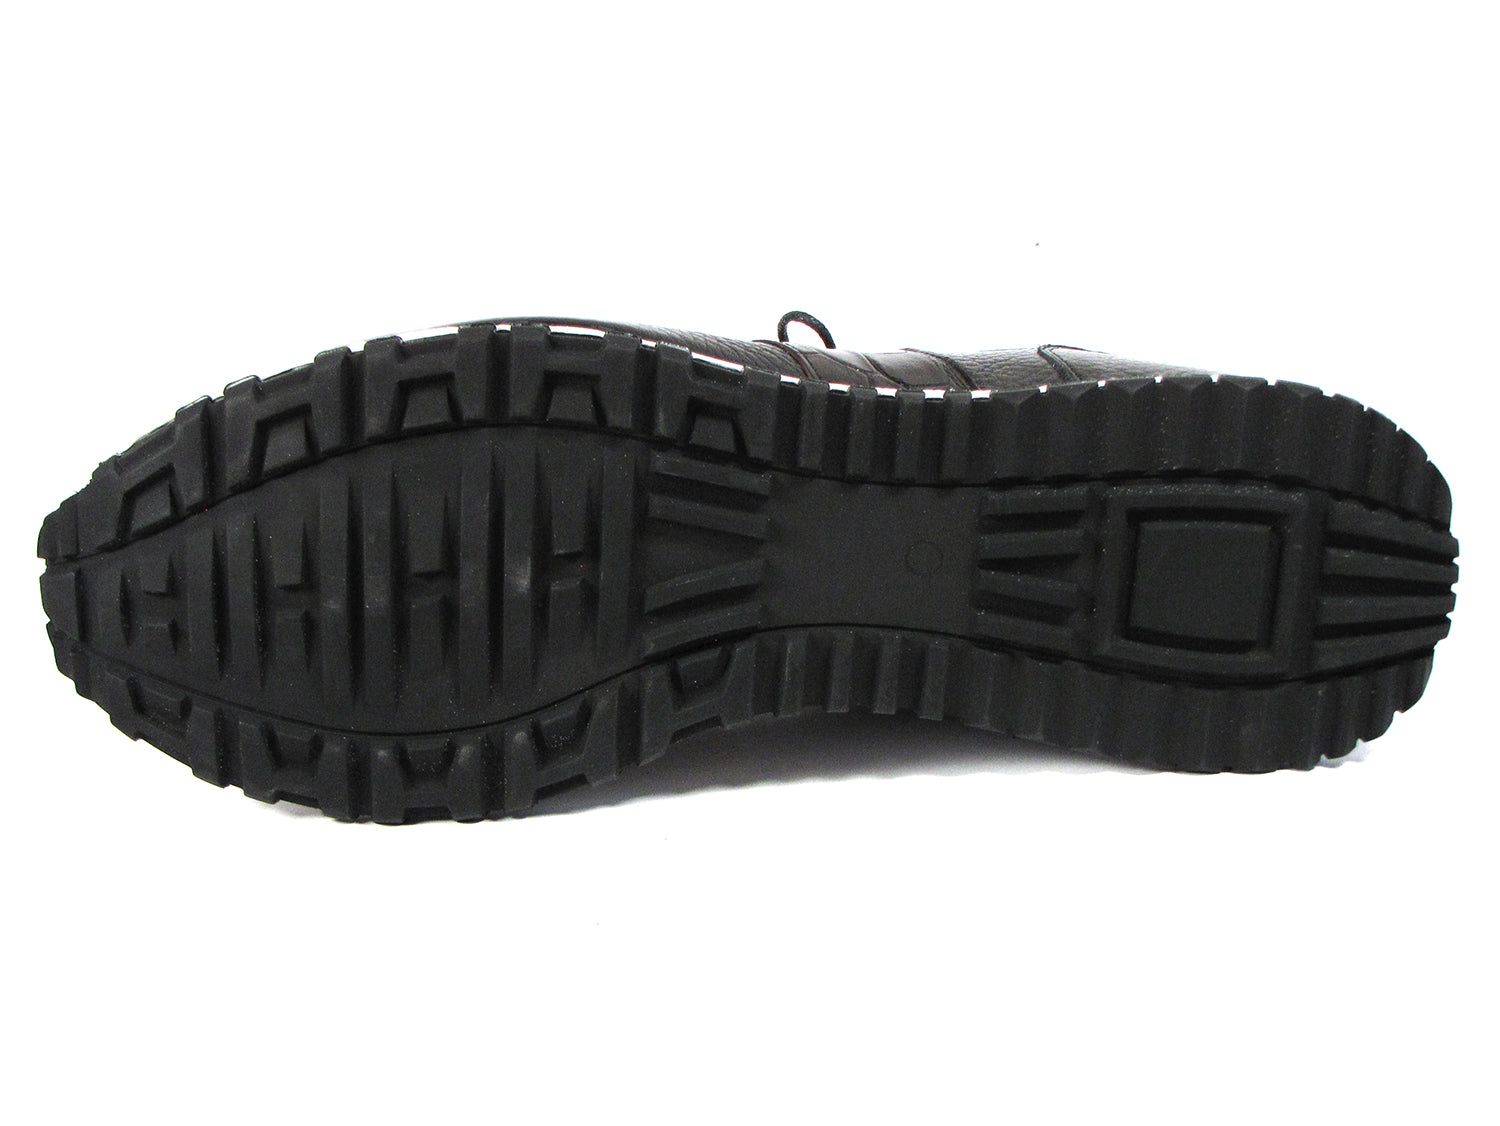 Paul Parkman Men's Black Floater Leather Sneakers - LP206BLK